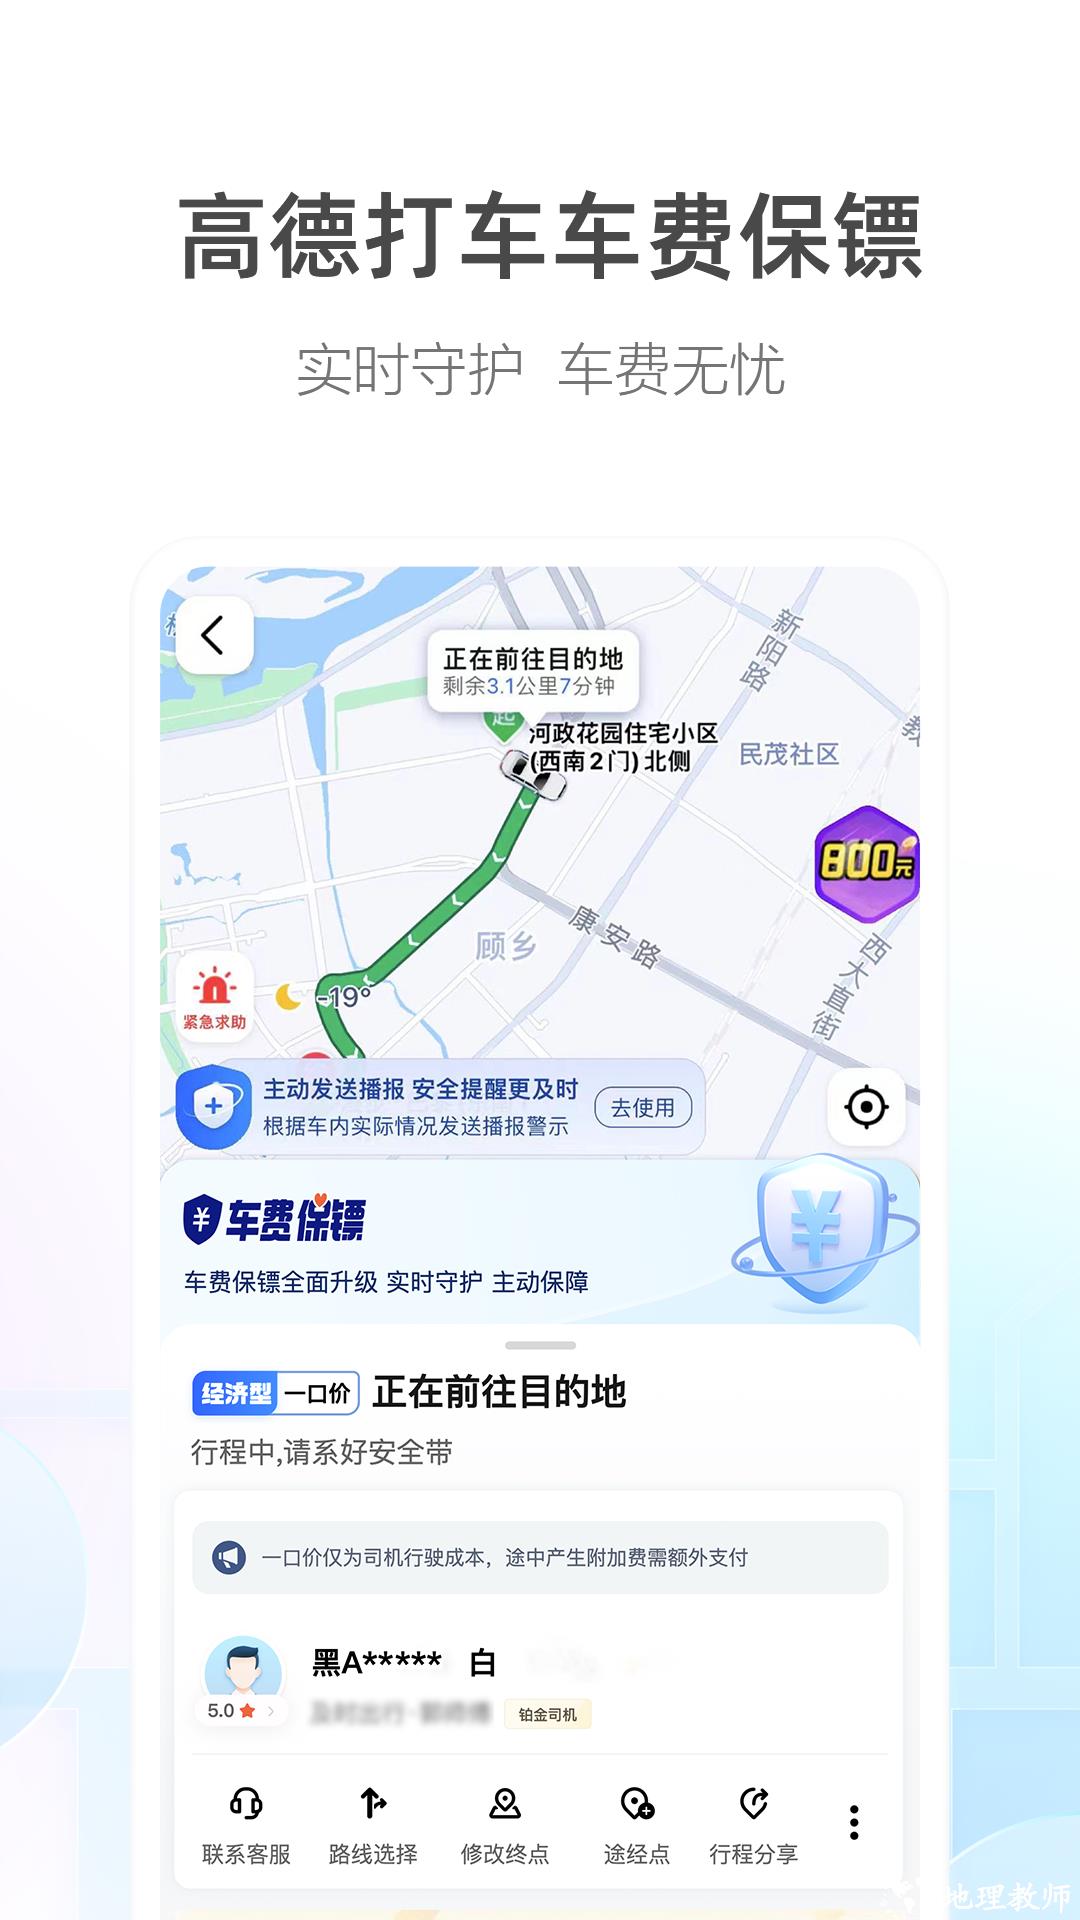 高德地图打车司机端app v13.10.0.2152 官方最新版 2